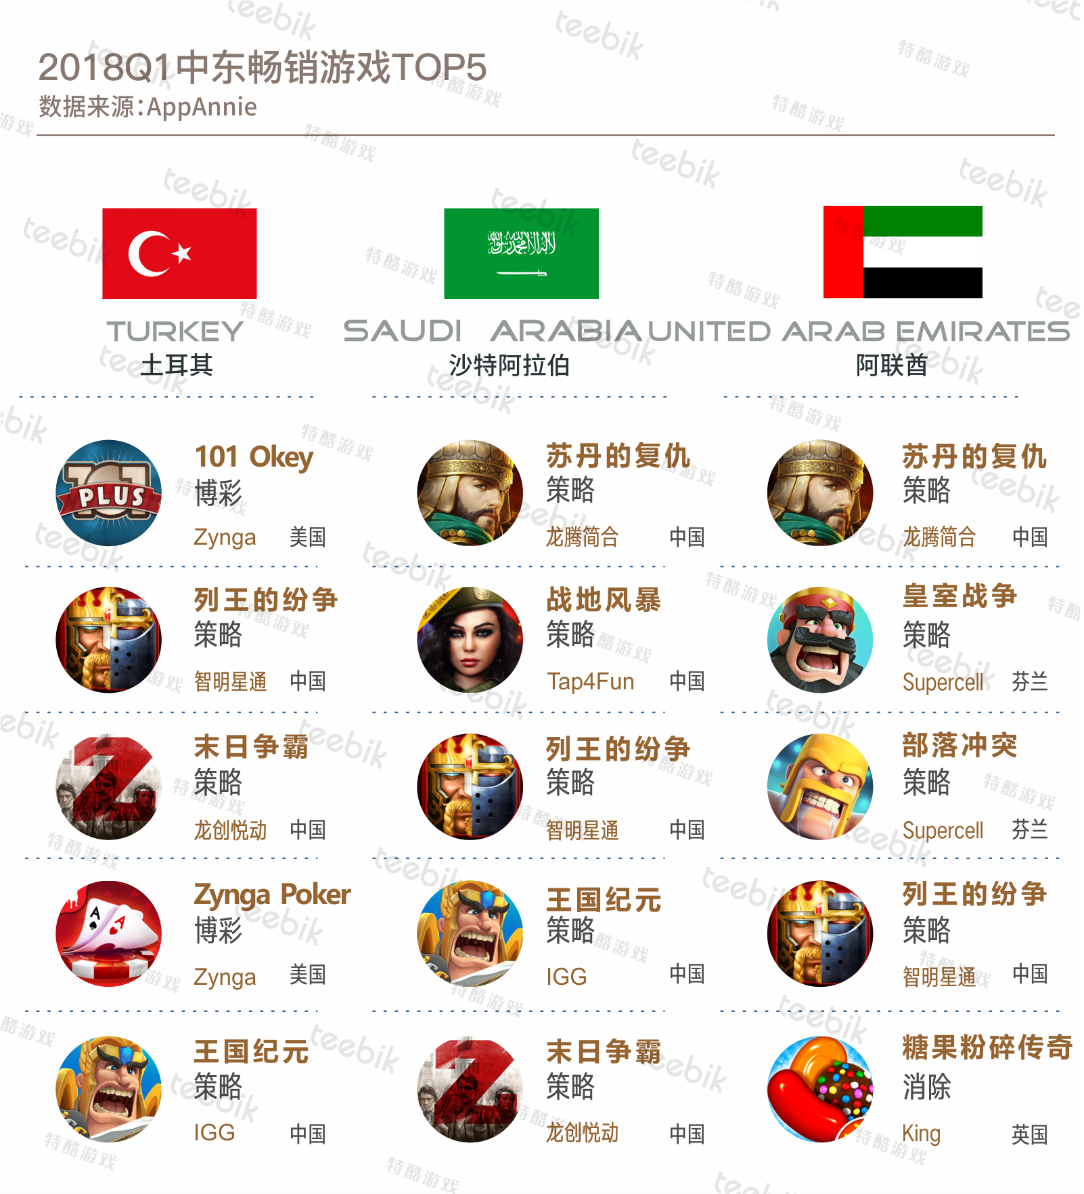 中国策略制霸中东市场 土耳其本土博彩游戏季度折冠